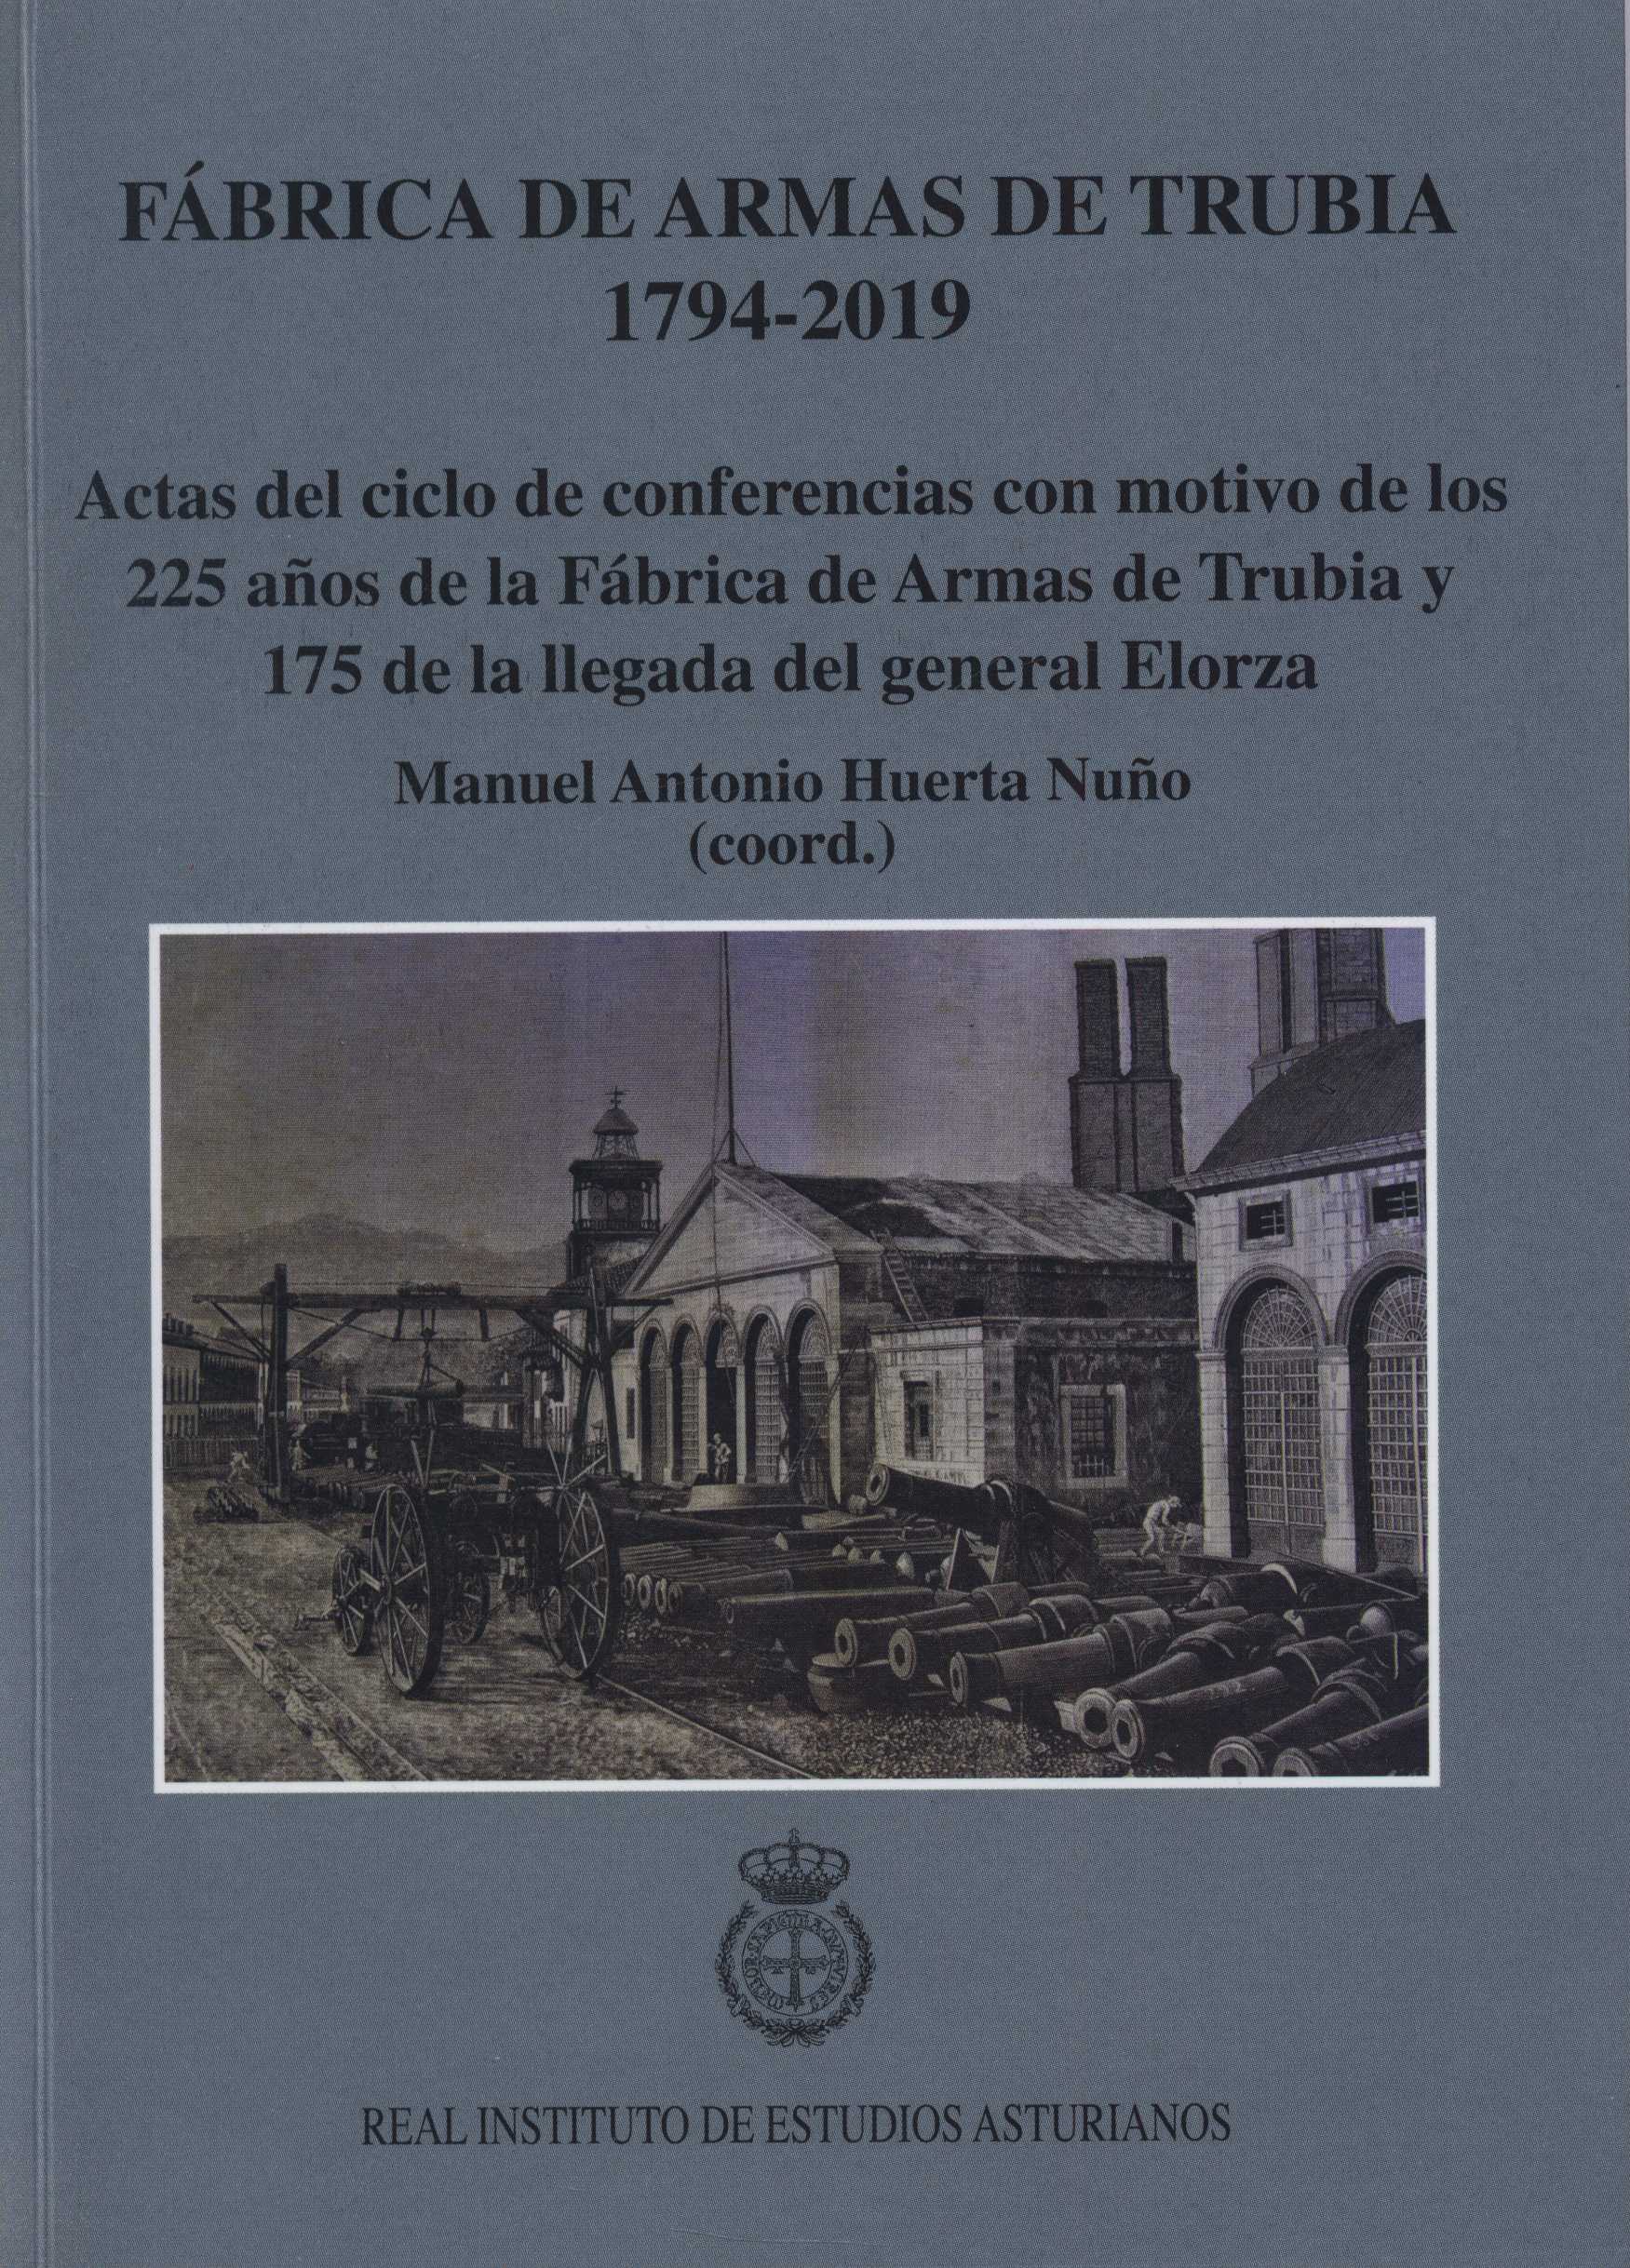 Imagen de portada del libro Fábrica de Armas de Trubia, 1794-2019: actas del ciclo de conferencias con motivo de los 225 años de la Fábrica de Armas de Trubia y 175 de la llegada del general Elorza